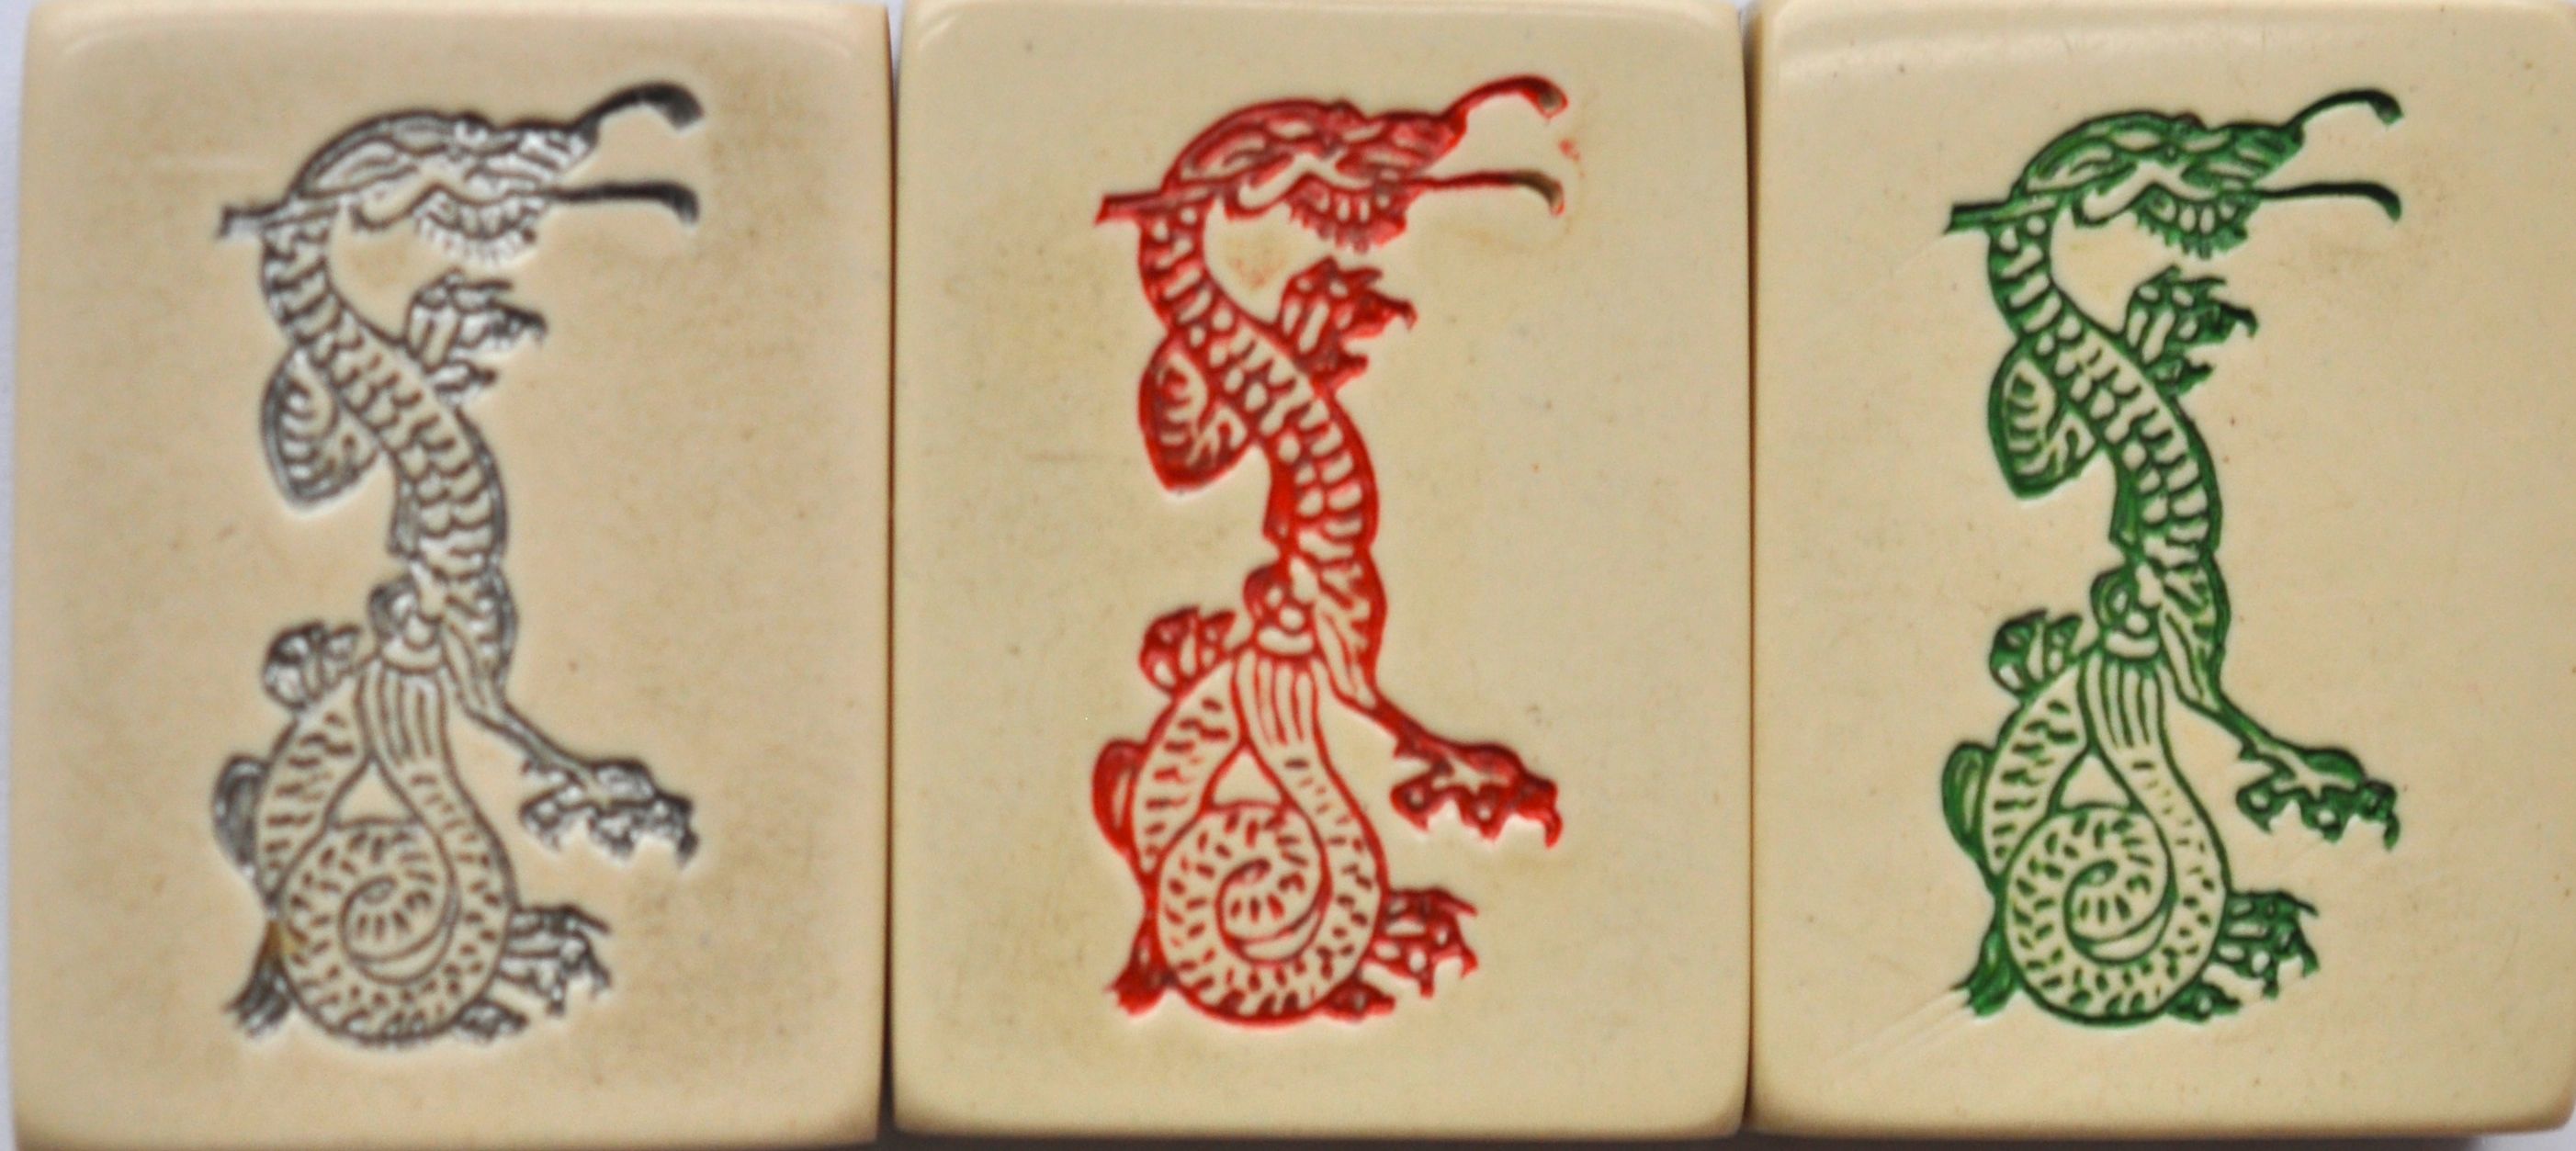 applause jump in Botany Dragons in Chinese Art and Mahjong Part 2 – Mahjong Treasures